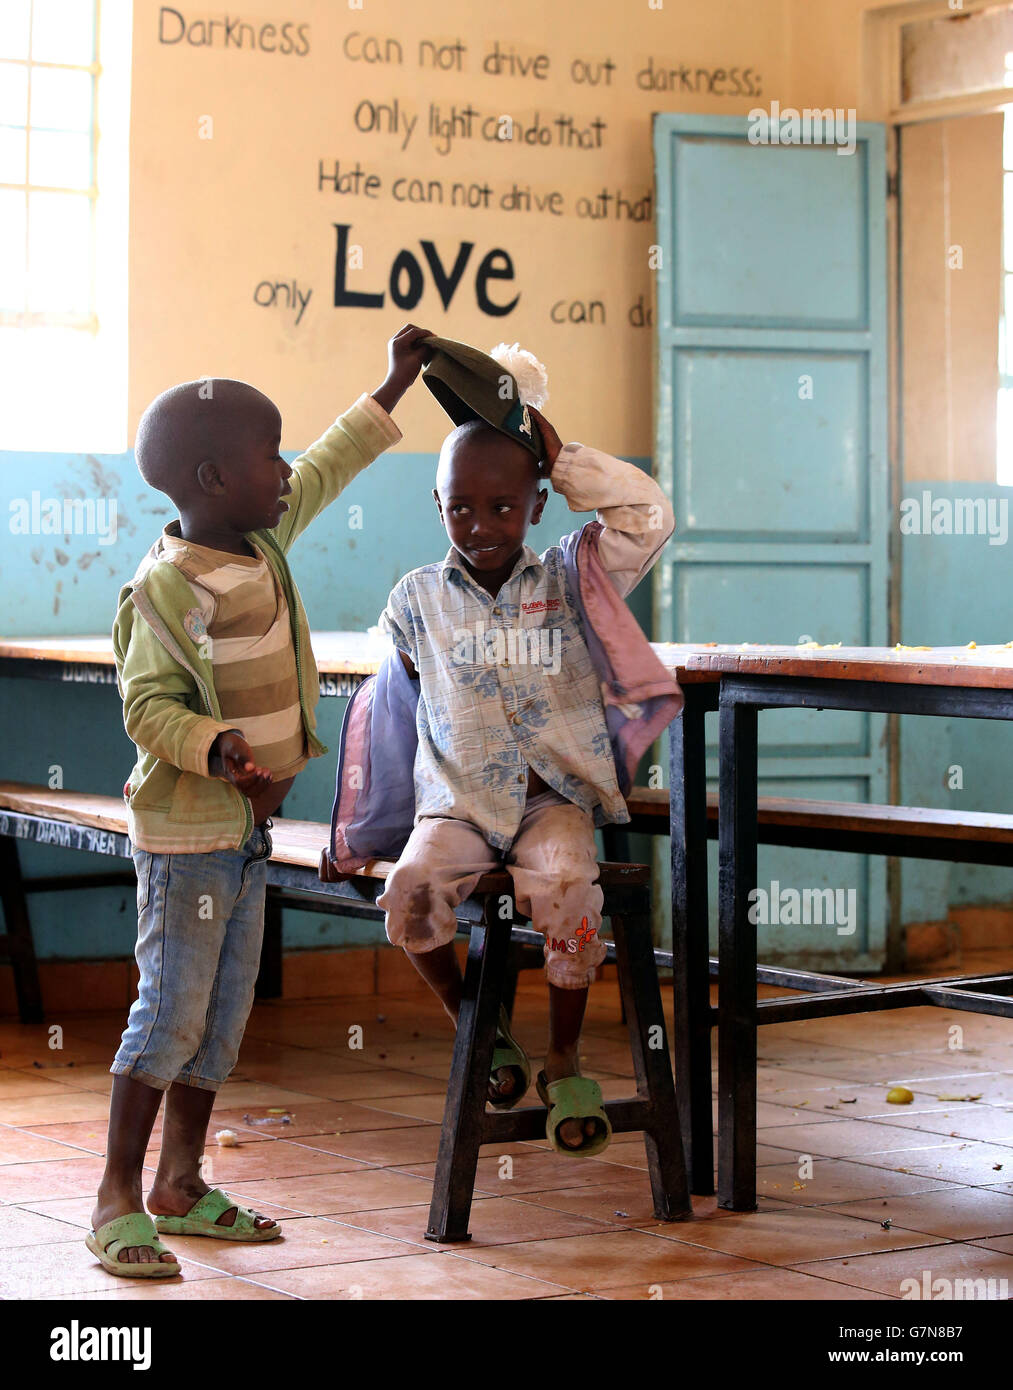 Kinder spielen mit einem Tam O'Shanter, während Soldaten von 2 Schotten das Nanyuki Kinderheim besuchen, um den Waisenkindern Geschenke zu spenden, während Soldaten des 2. Bataillons, des Royal Regiment of Scotland, an der Übung Askari Storm am Stadtrand von Nanyuki, Kenia, teilnehmen. Stockfoto